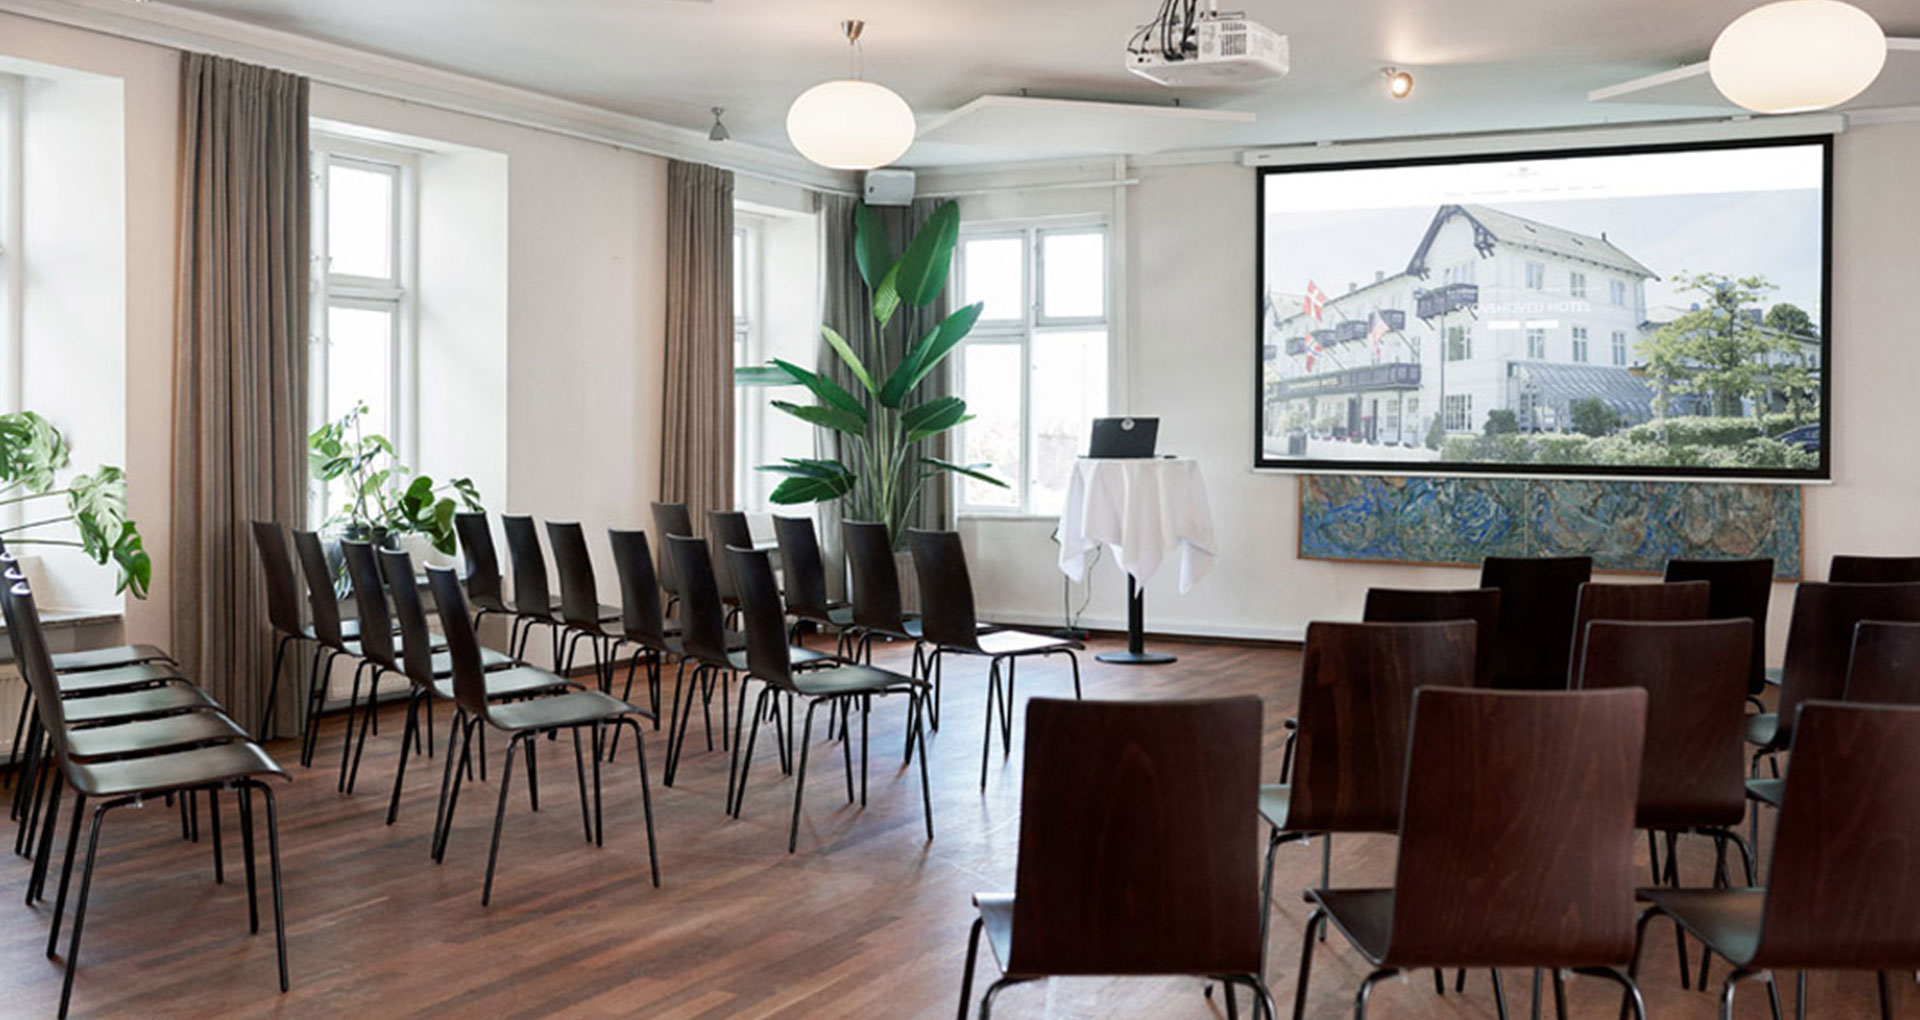 meeting room - Mødelokale I Skovshoved Hotel